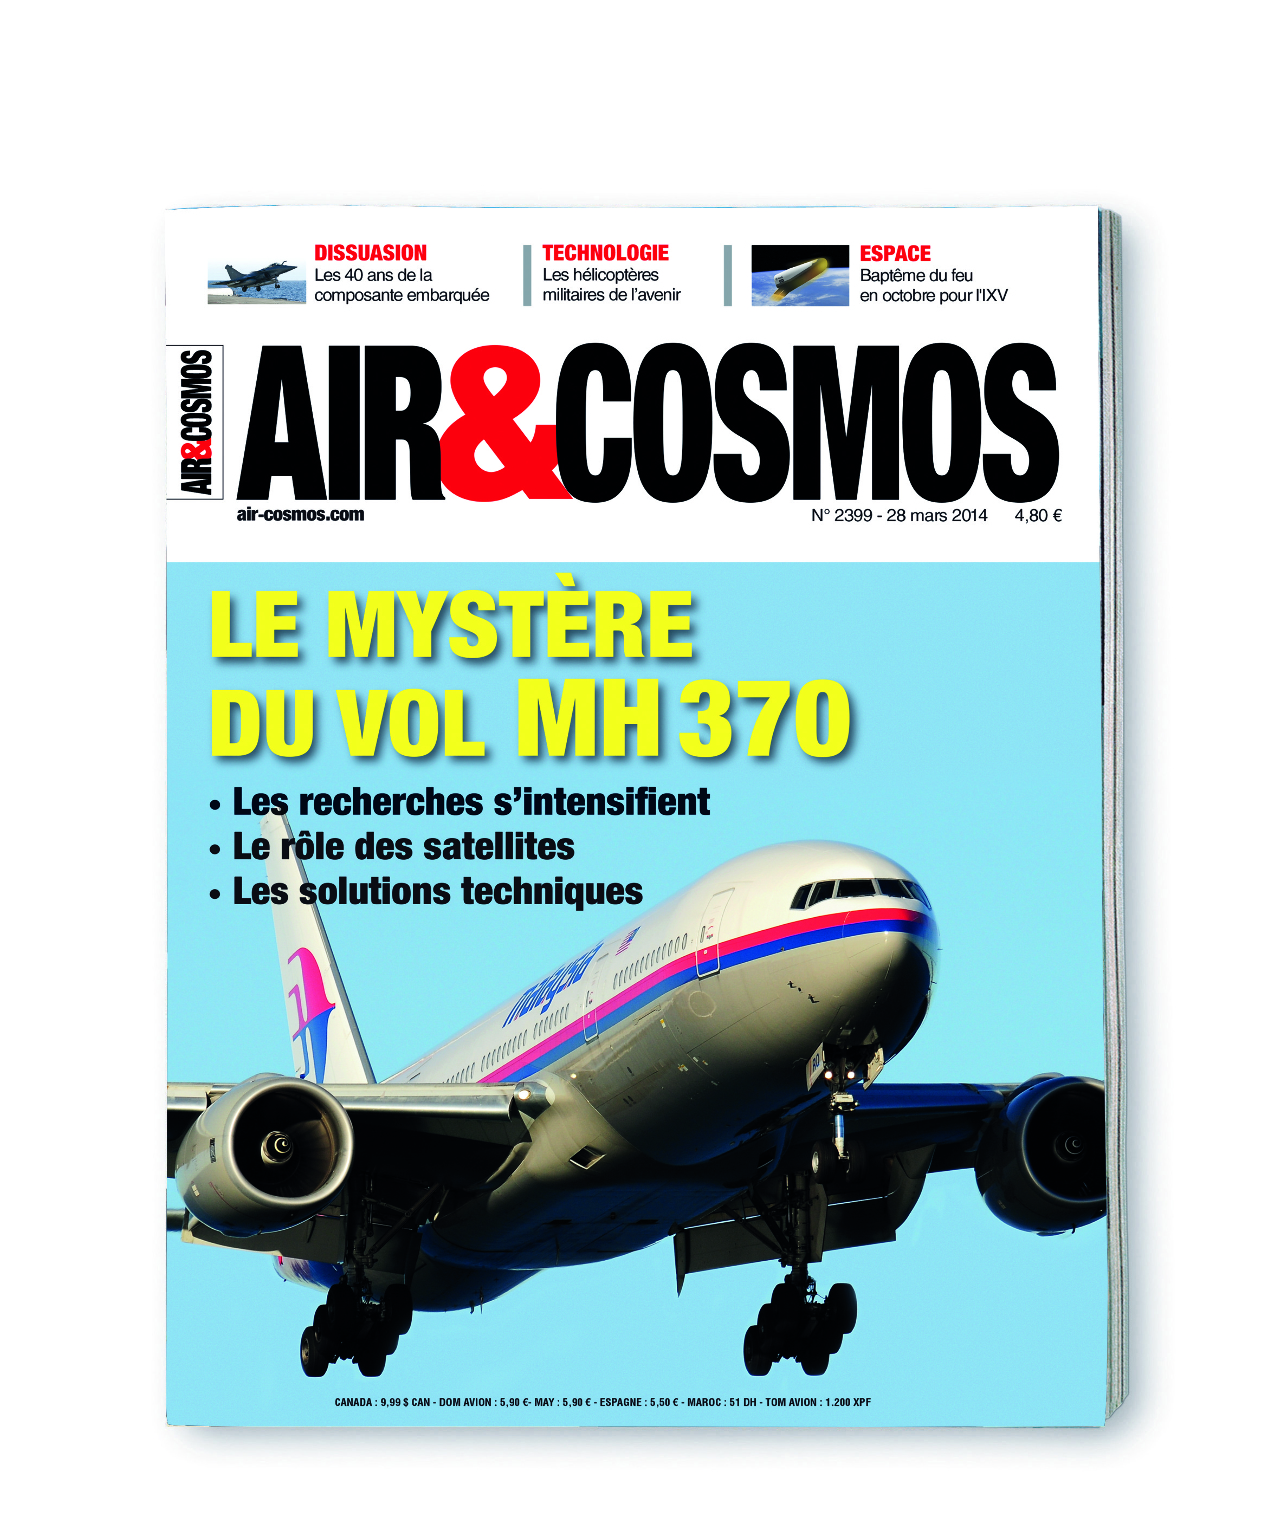 L'année 2014 en images : le mystère du vol MH370